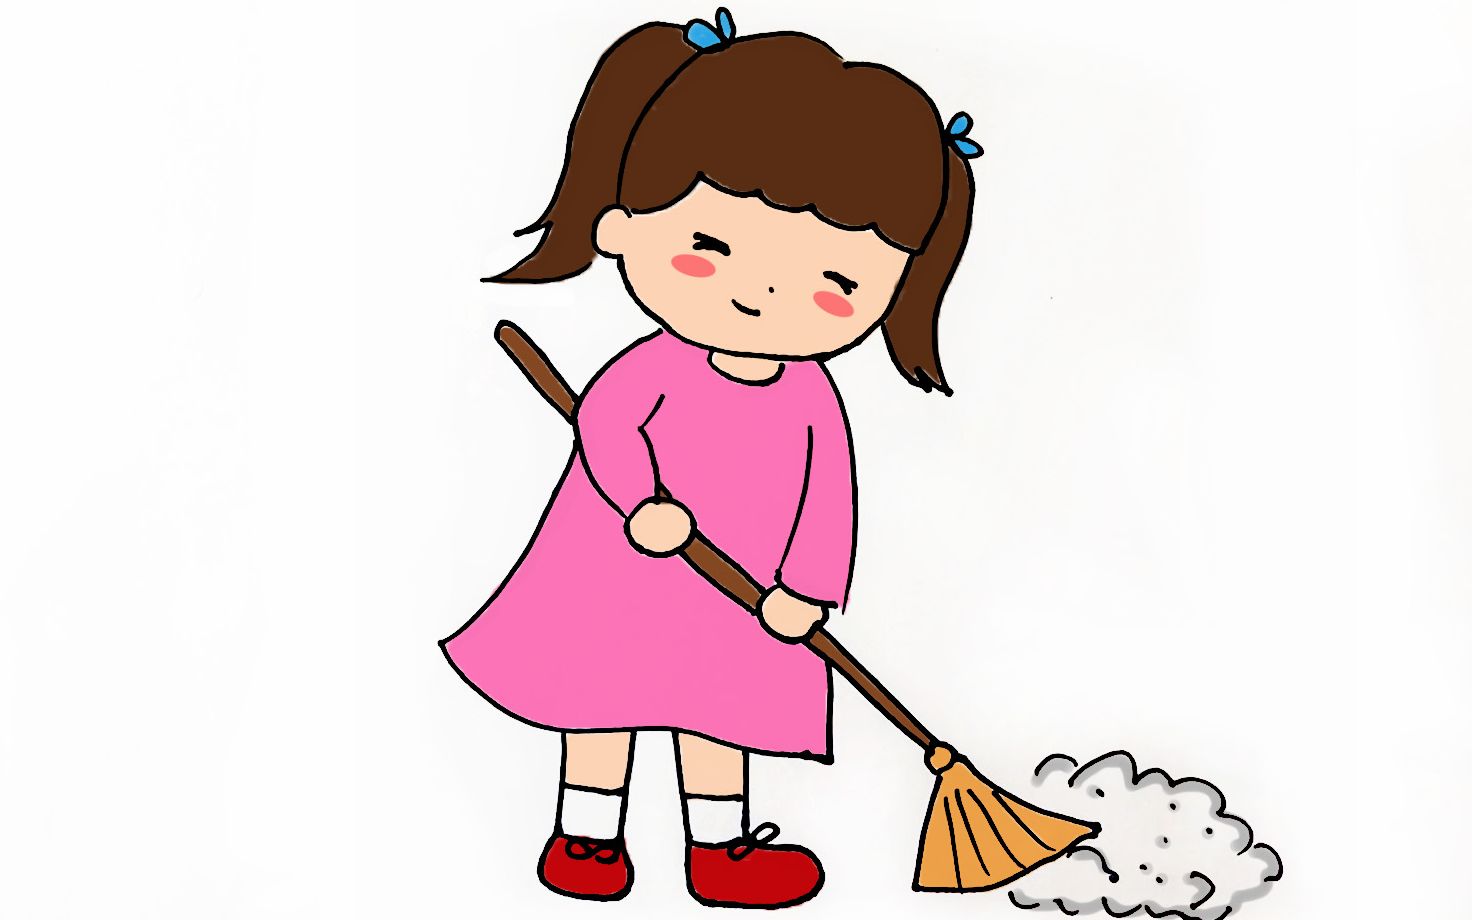 画勤劳的扫地小女孩简笔画 5小仓鼠:萌萌的小仓鼠简笔画教程,培养孩子